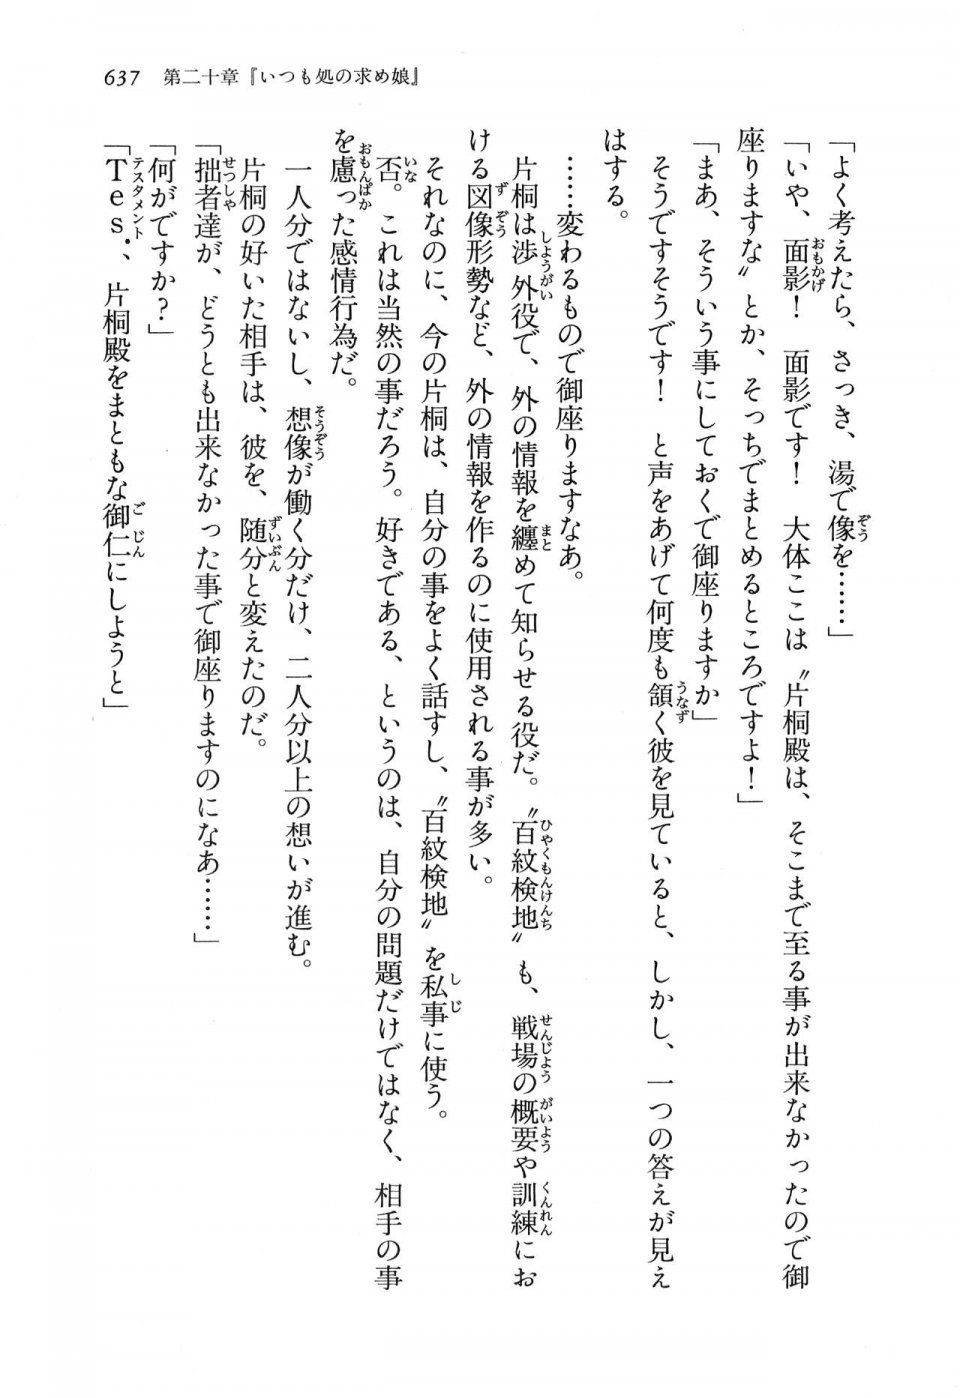 Kyoukai Senjou no Horizon LN Vol 16(7A) - Photo #637